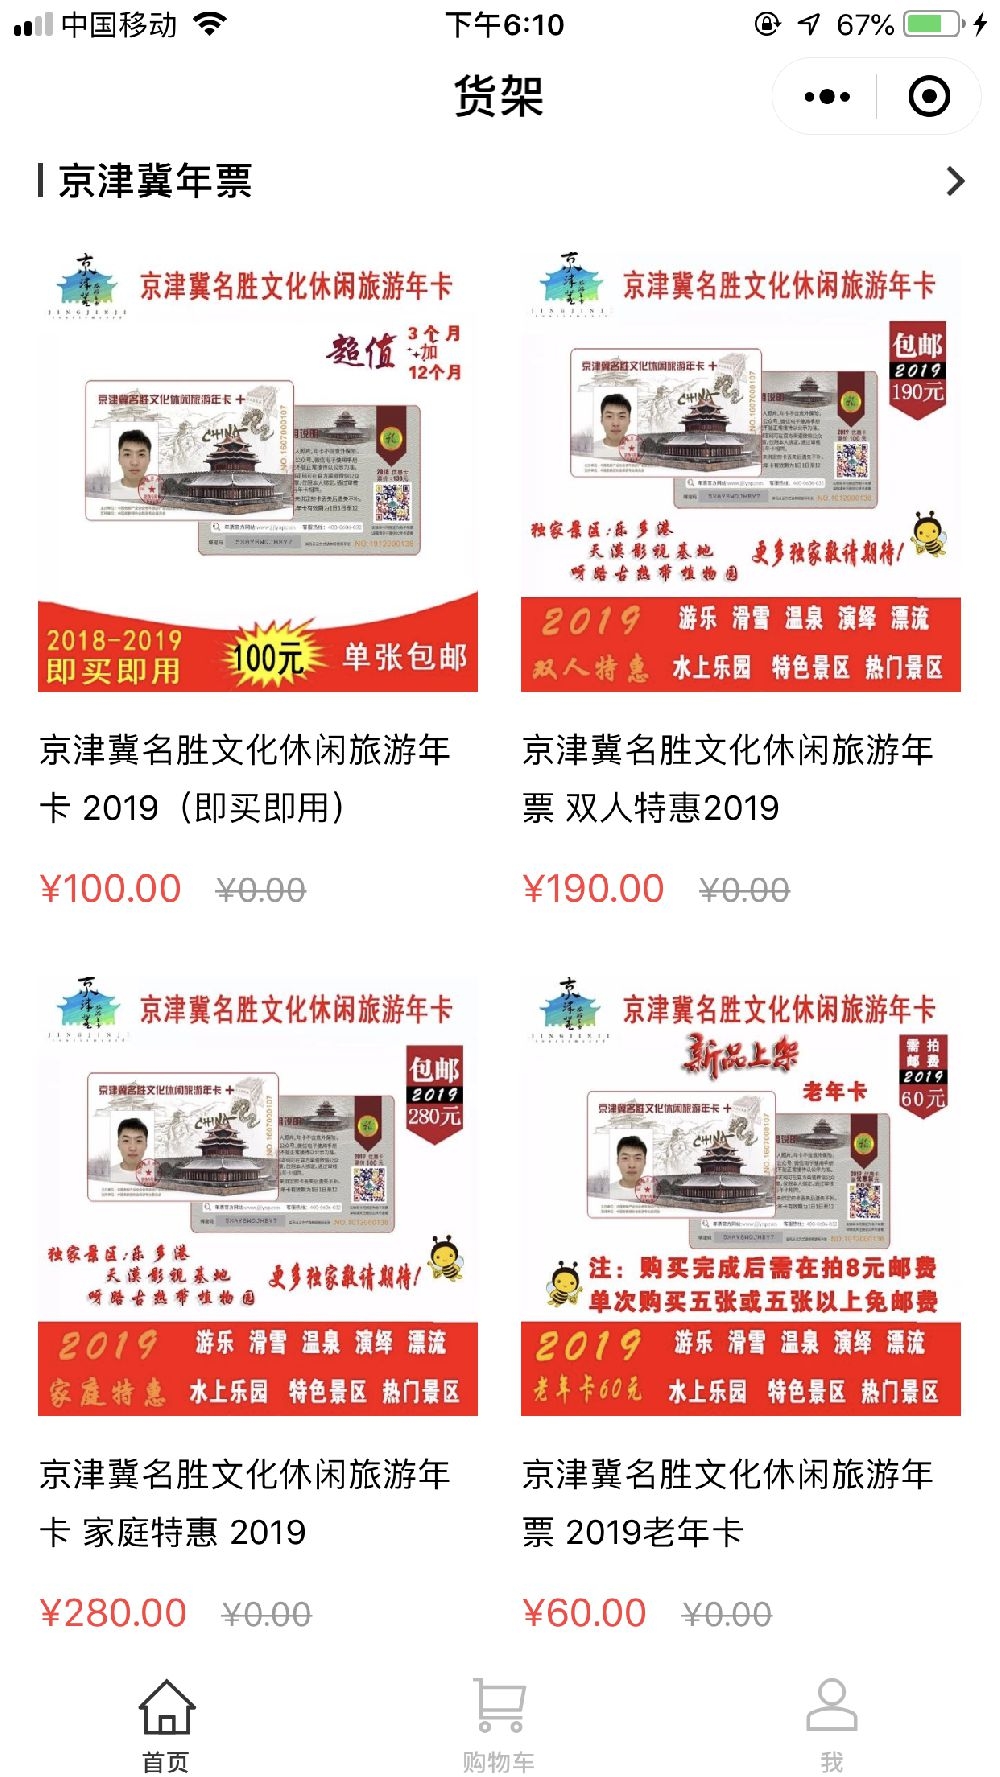  2019京津冀旅游年卡种类及价格多少钱